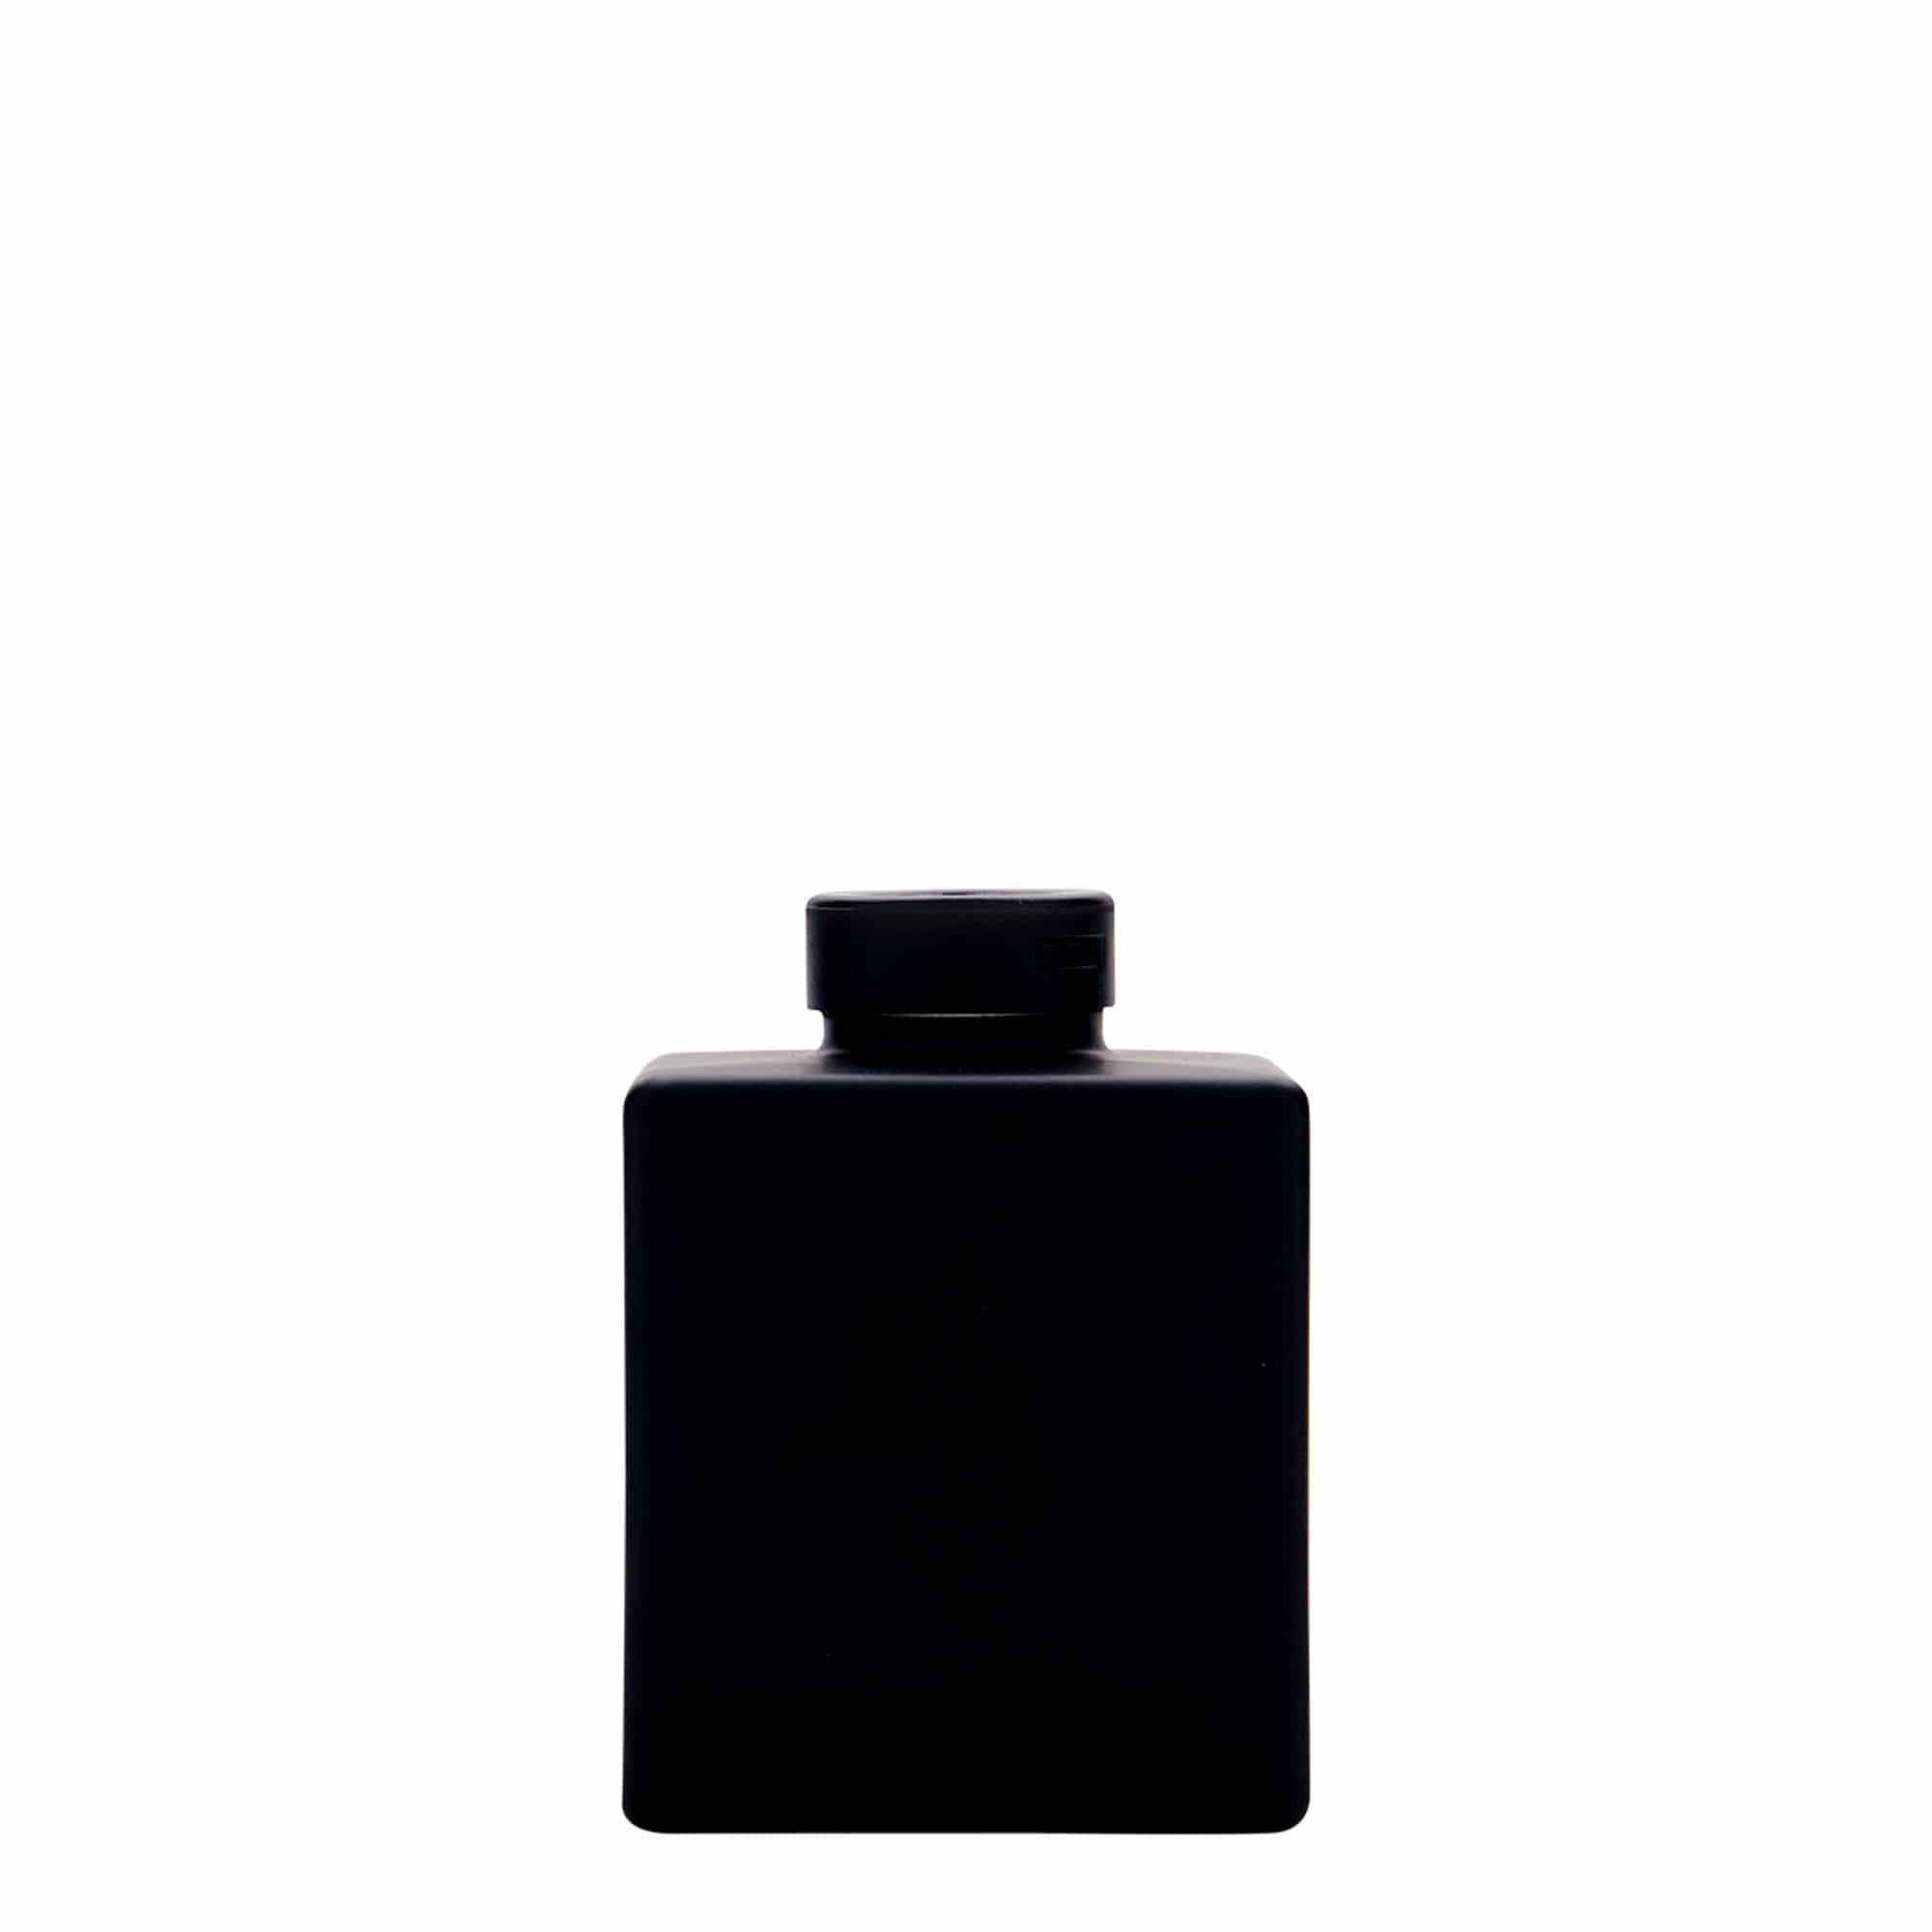 Skleněná lahev 100 ml 'Cube', čtvercová, černá, uzávěr: korek